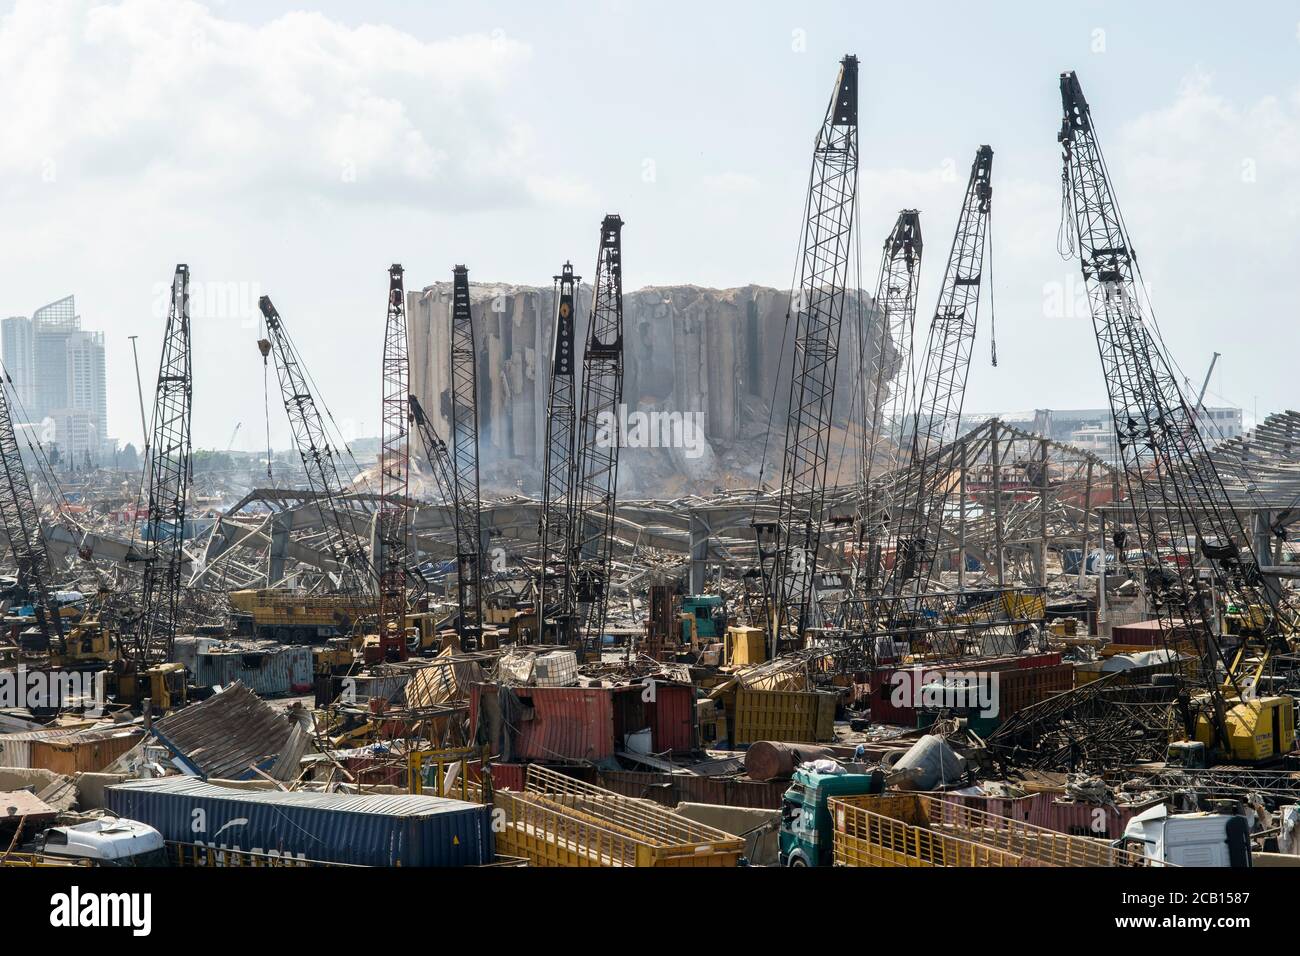 Daños causados por una explosión enorme que devastó Beirut en la detonación de 2,750 toneladas de nitrato de amonio almacenadas en el puerto de la ciudad. Foto de stock